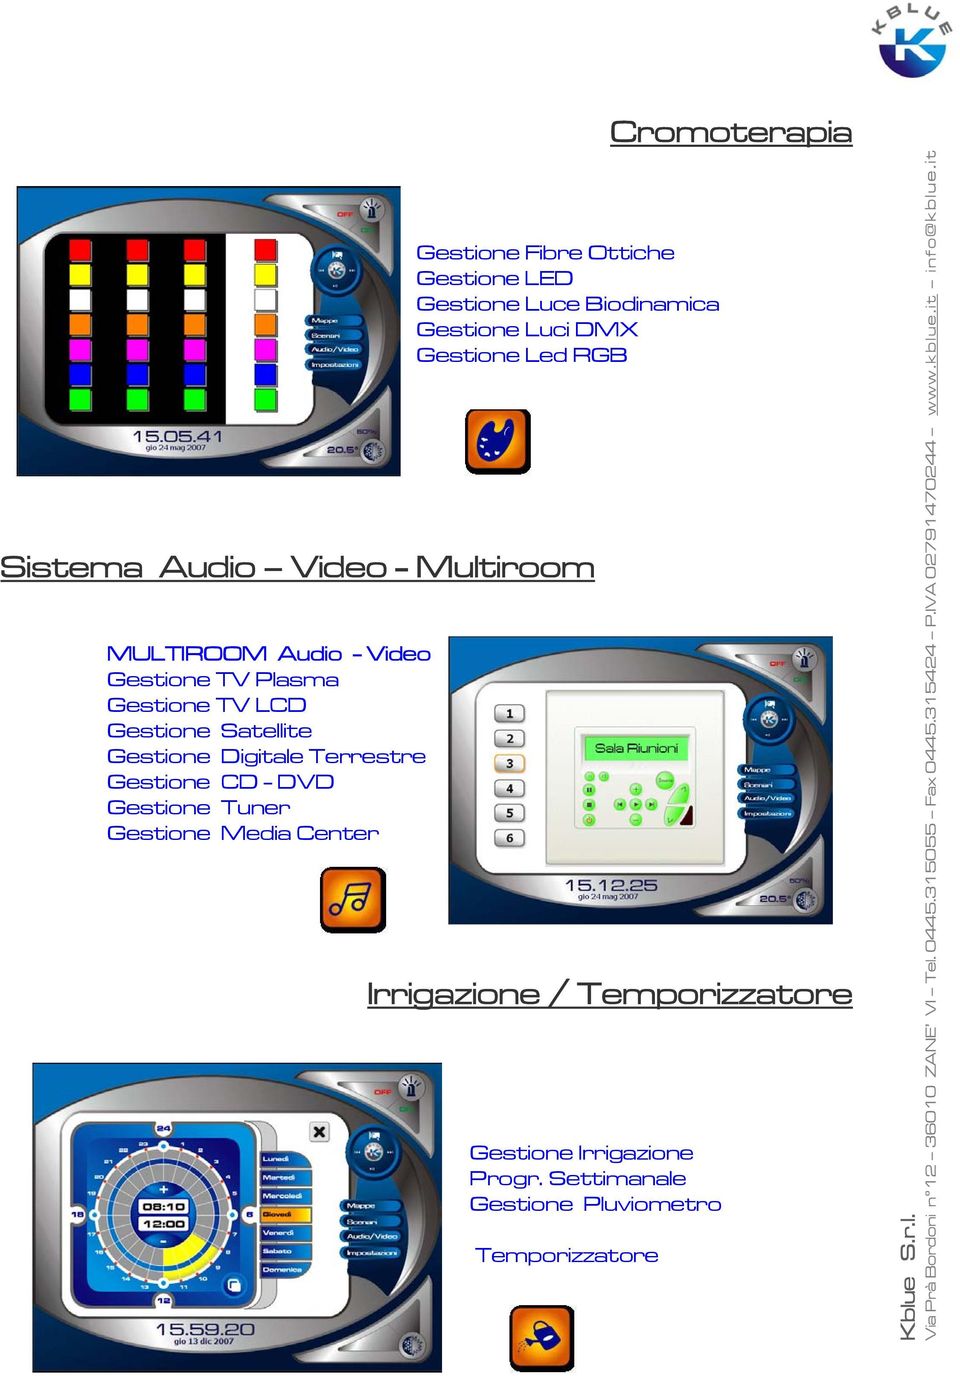 Gestione Satellite Gestione Digitale Terrestre Gestione CD - DVD Gestione Tuner Gestione Media Center